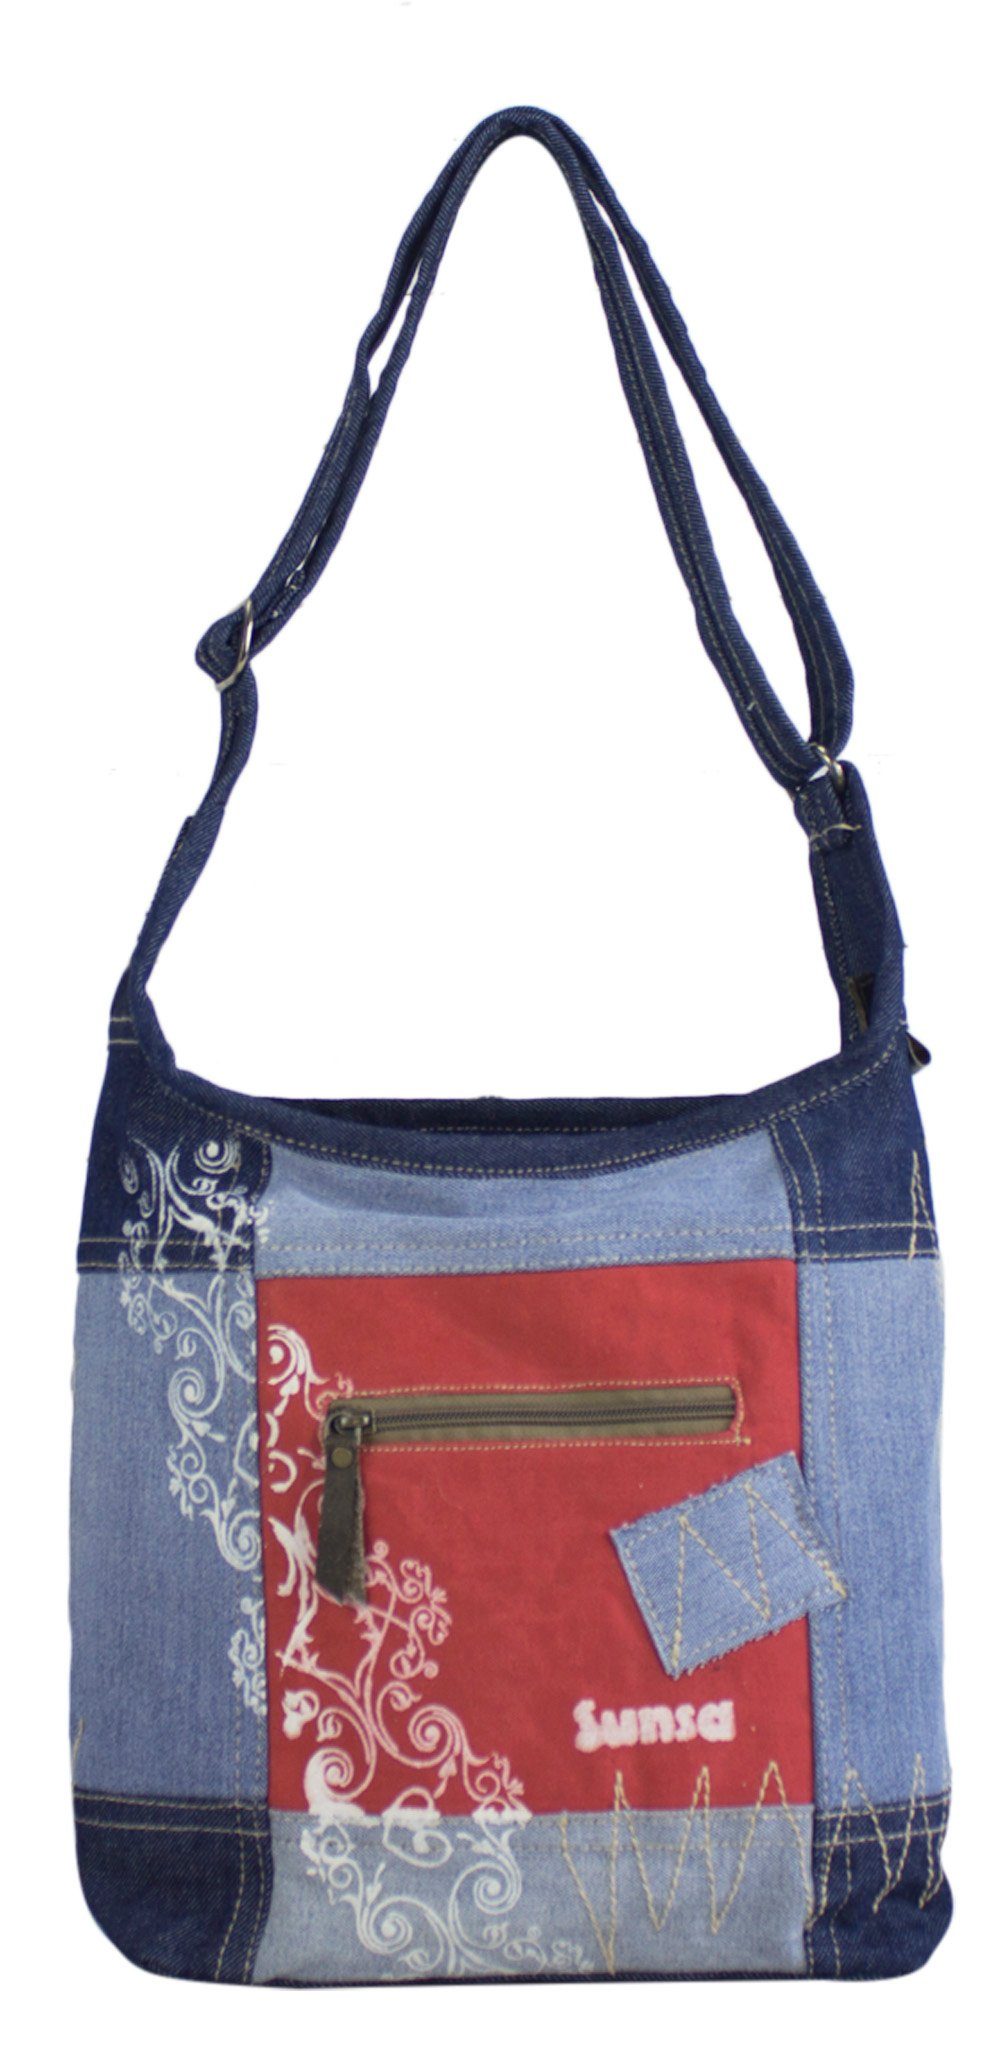 Tasche Canvas. Schultertasche recycelte Jeans design., recycelten Retro Vintage in Rote Sunsa Aus und Materialien Umhängetasche Hobo aus